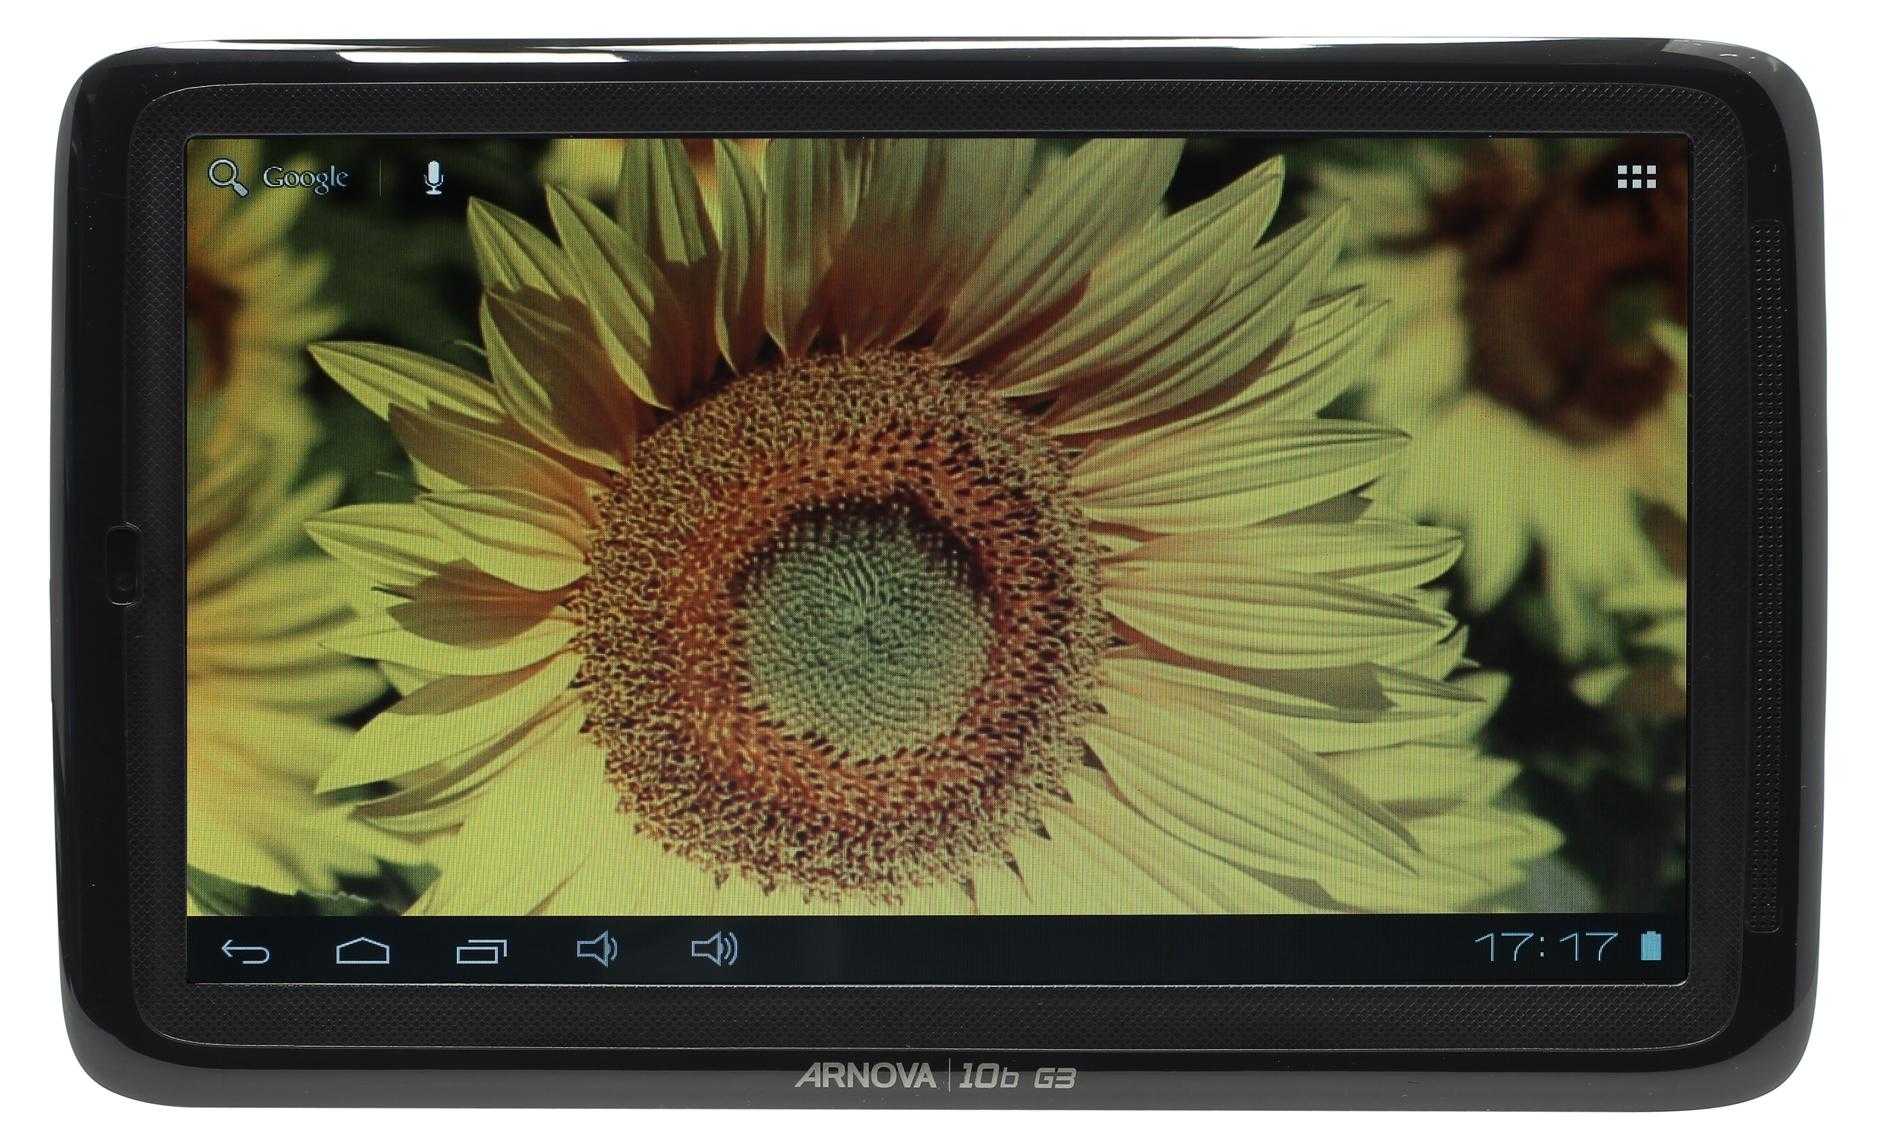 Планшет Archos Arnova 10b G3 - подробные характеристики обзоры видео фото Цены в интернет-магазинах где можно купить планшет Archos Arnova 10b G3